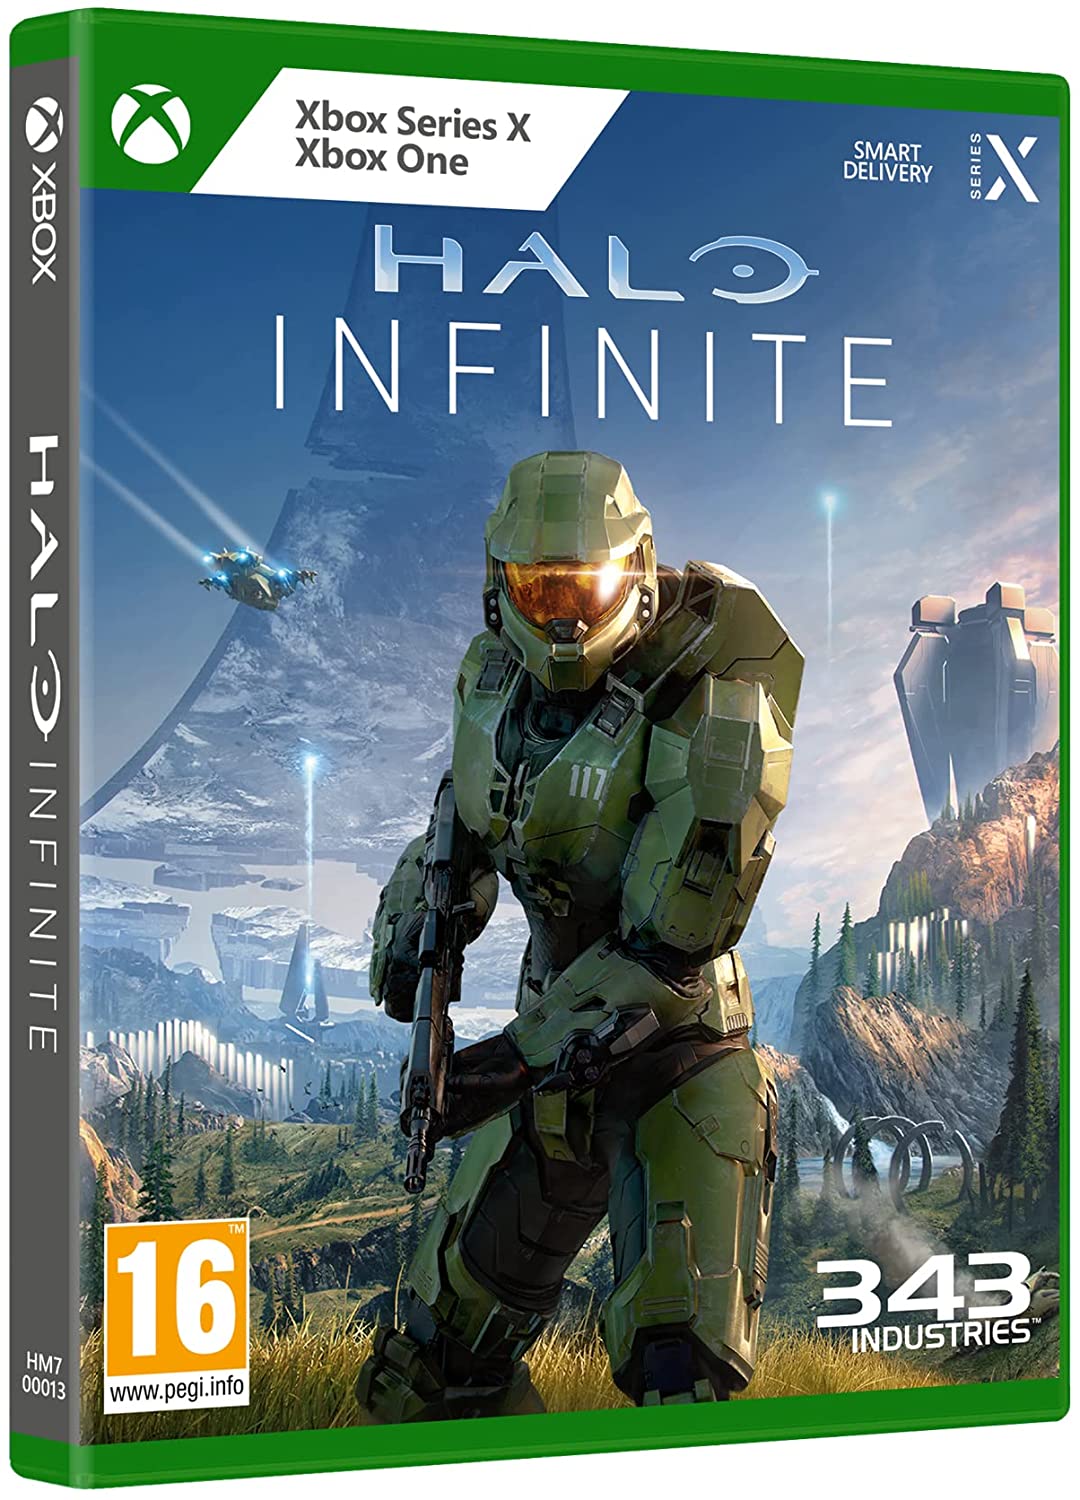 
                                    
                                Halo Infinite, la recensione della campagna: lo spettacolare ritorno di Master Chief su Xbox Series X